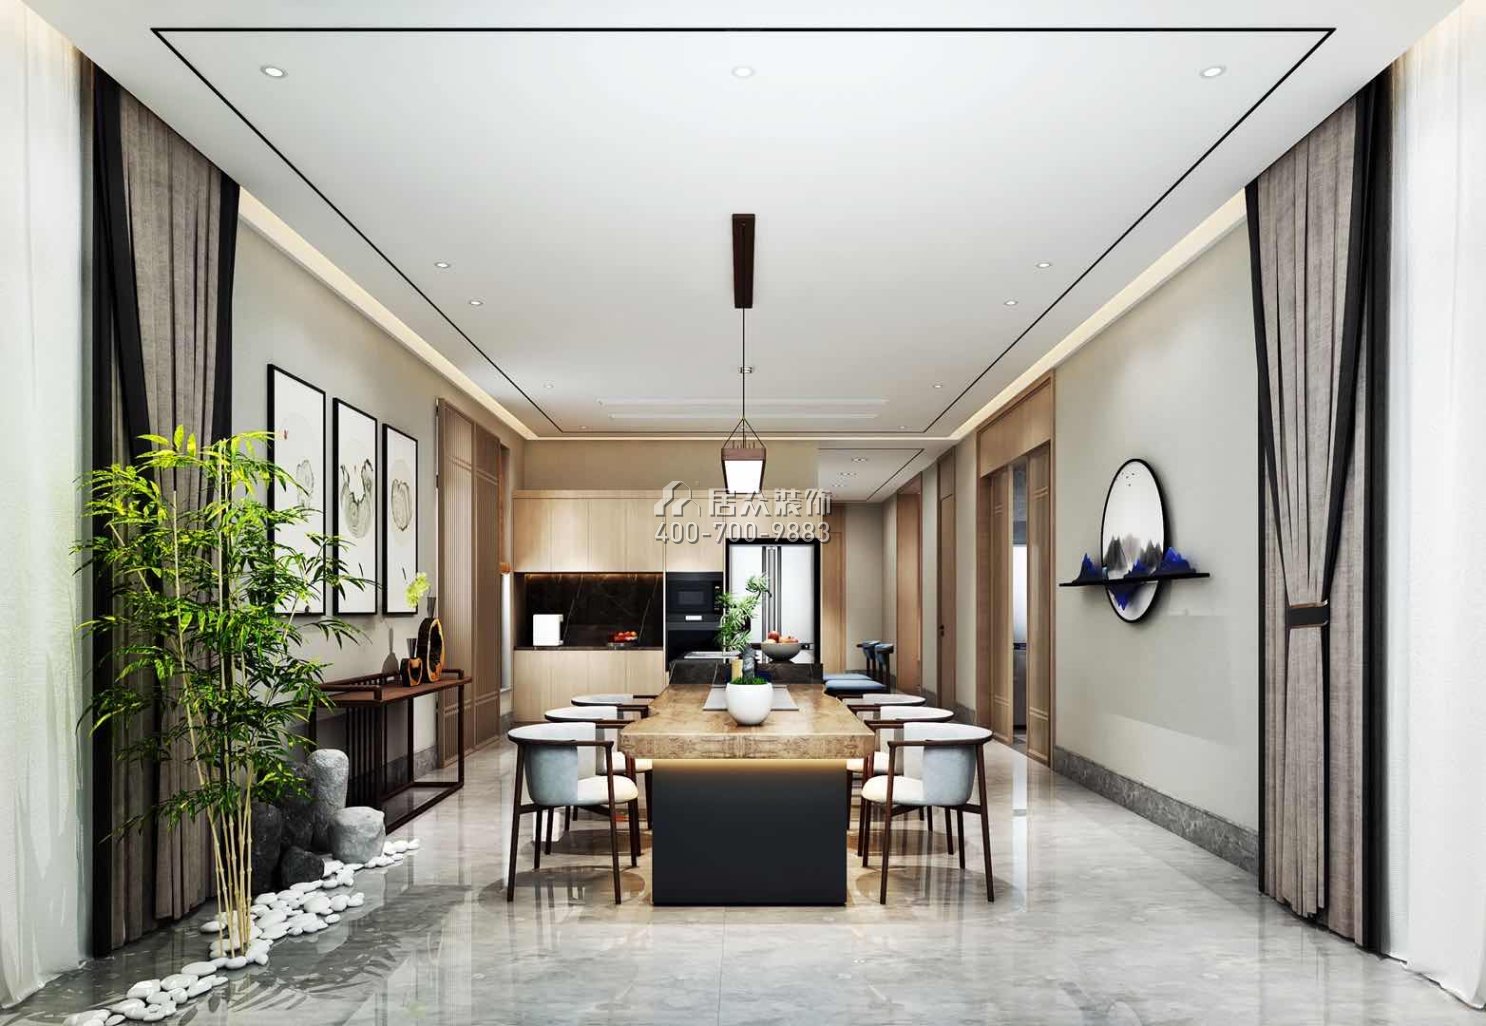 九洲保利天河620平方米中式风格别墅户型餐厅装修效果图